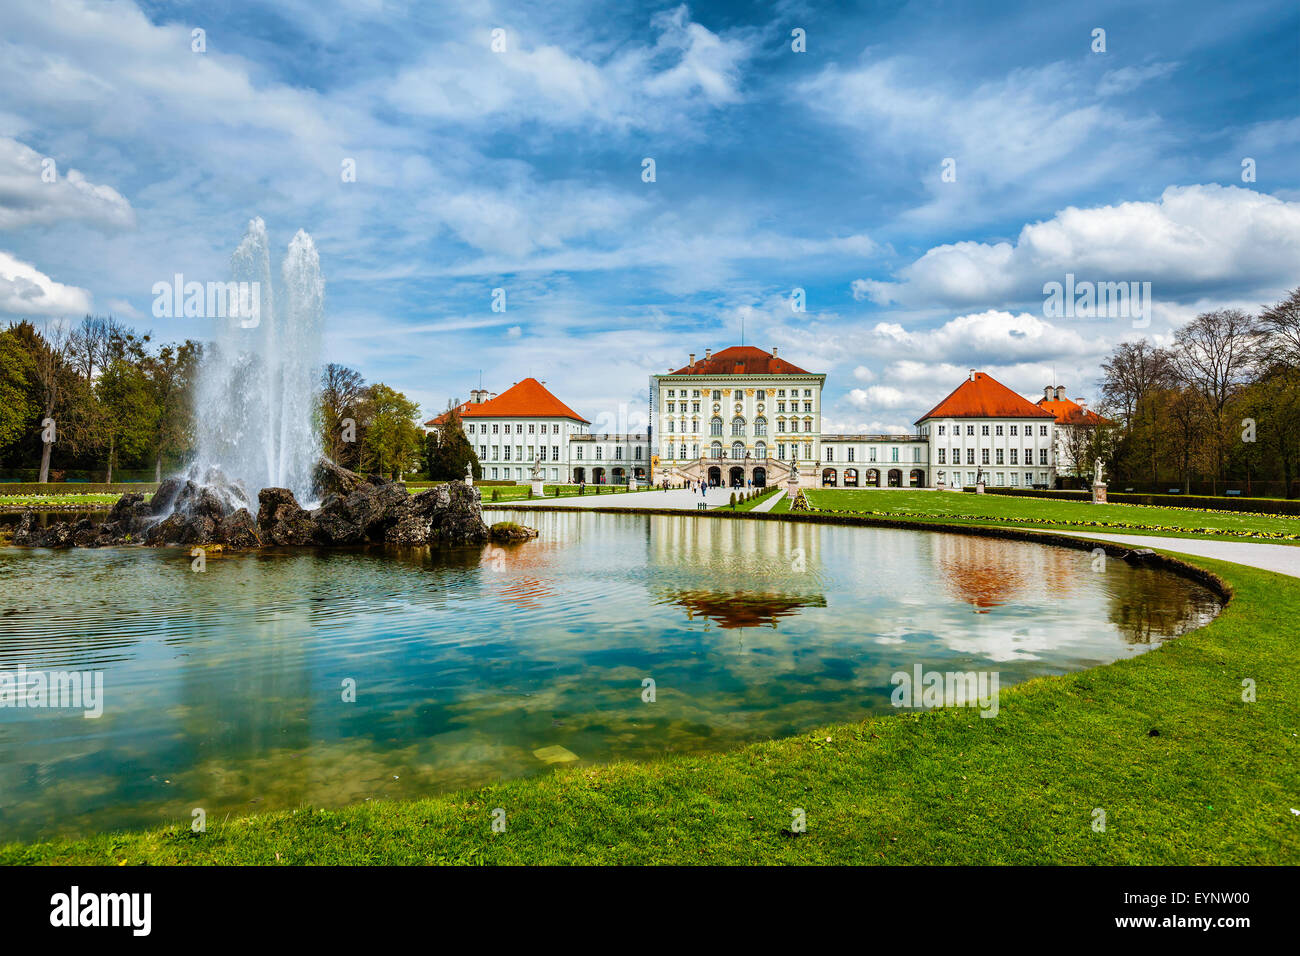 Nymphenburg Palace. Munich, Germany Stock Photo